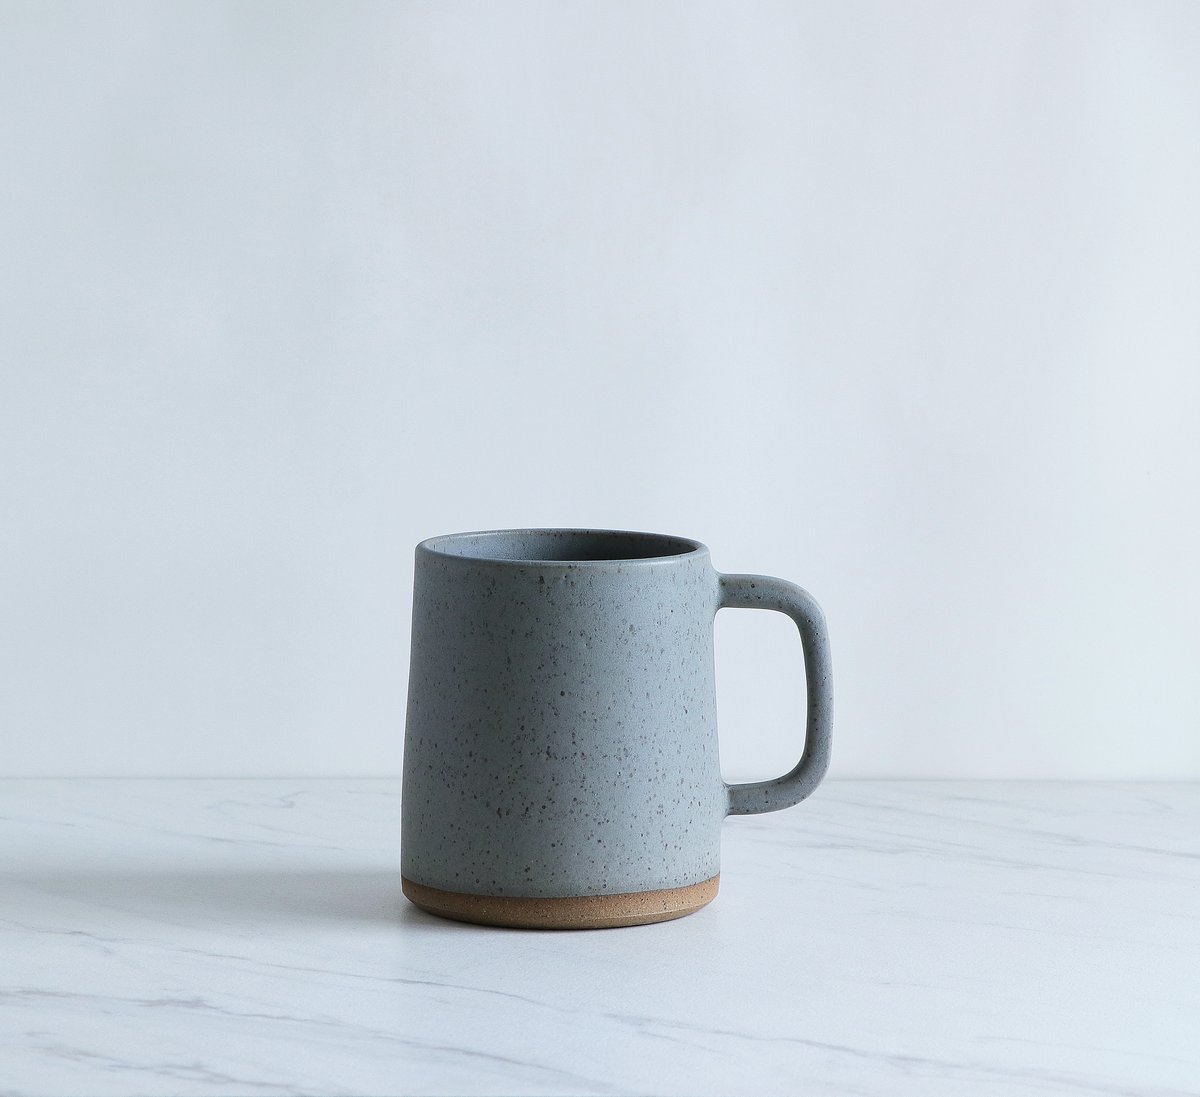 Image of 16 oz mug, glazed in Gray